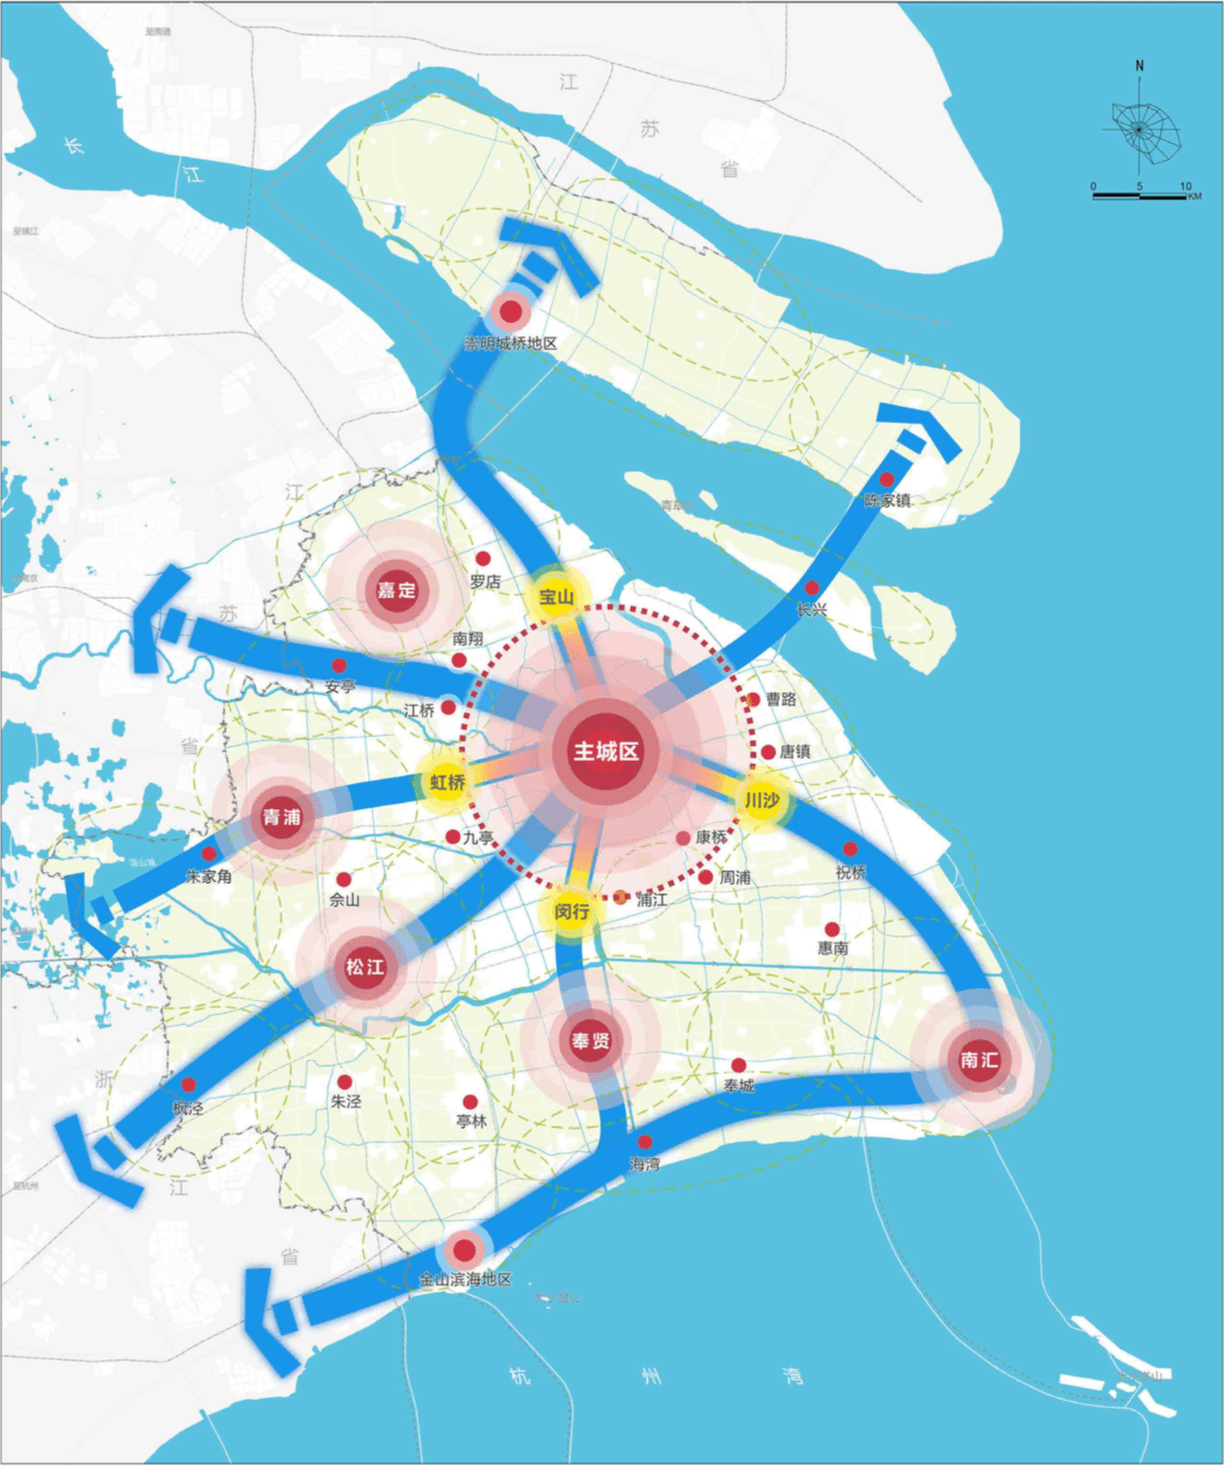 上海"1 5"市域空间结构示意图 来源:上海市城市总体规划(2017-2035)